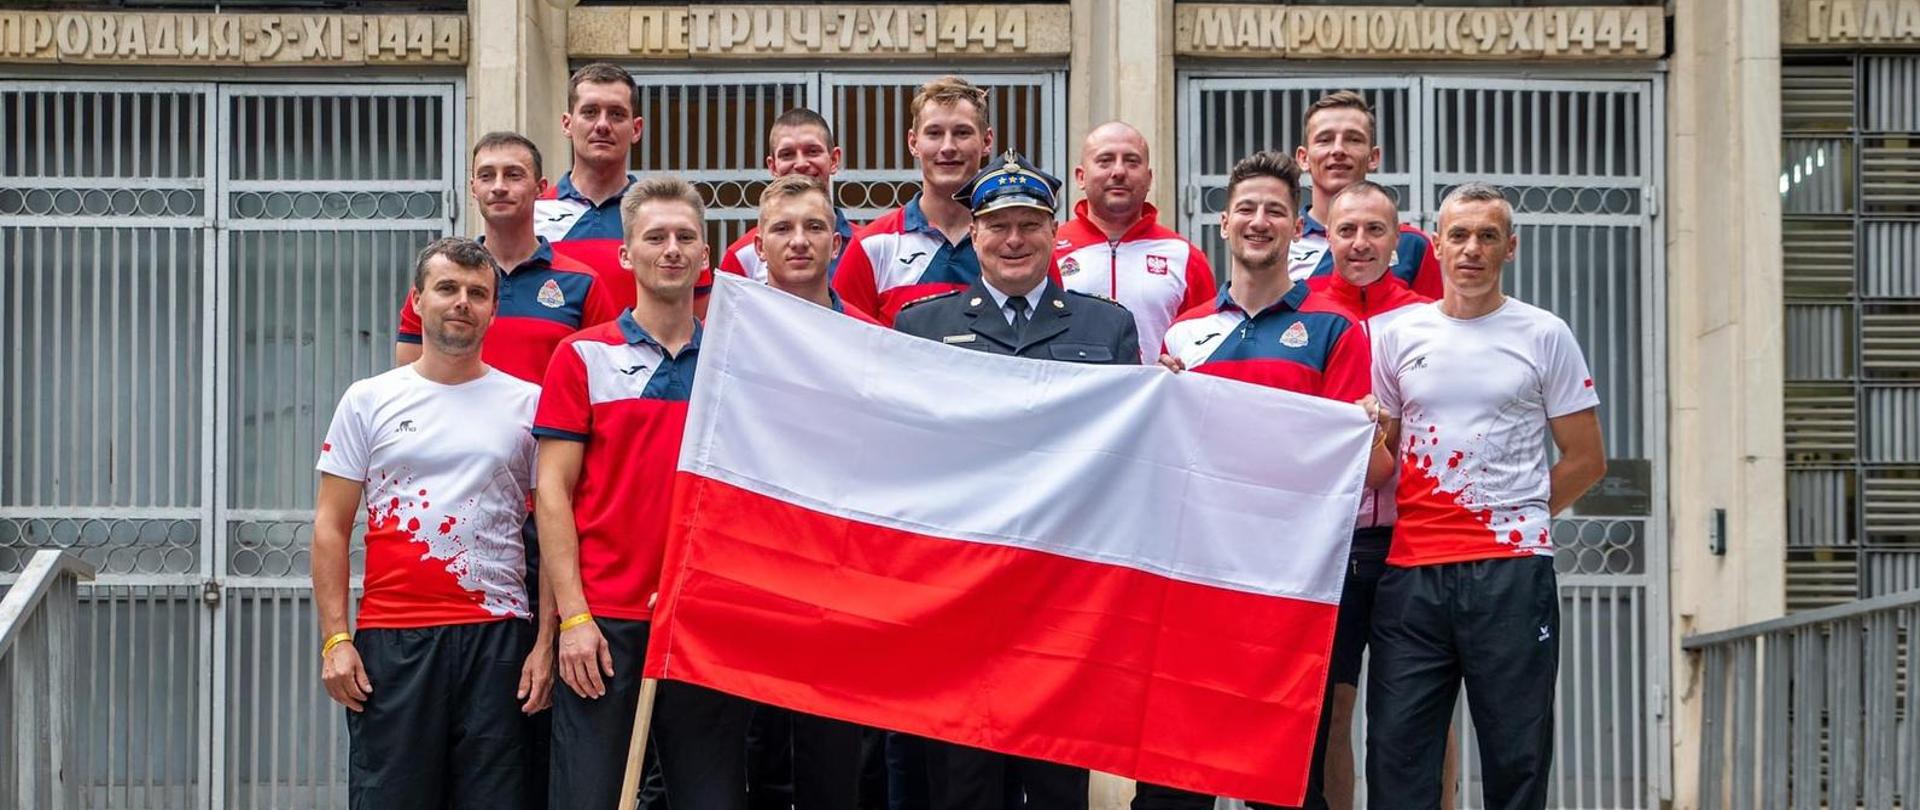 Polska reprezentacja pozuje do zdjęcia grupowego trzymając flagę Polski, w tle budynek